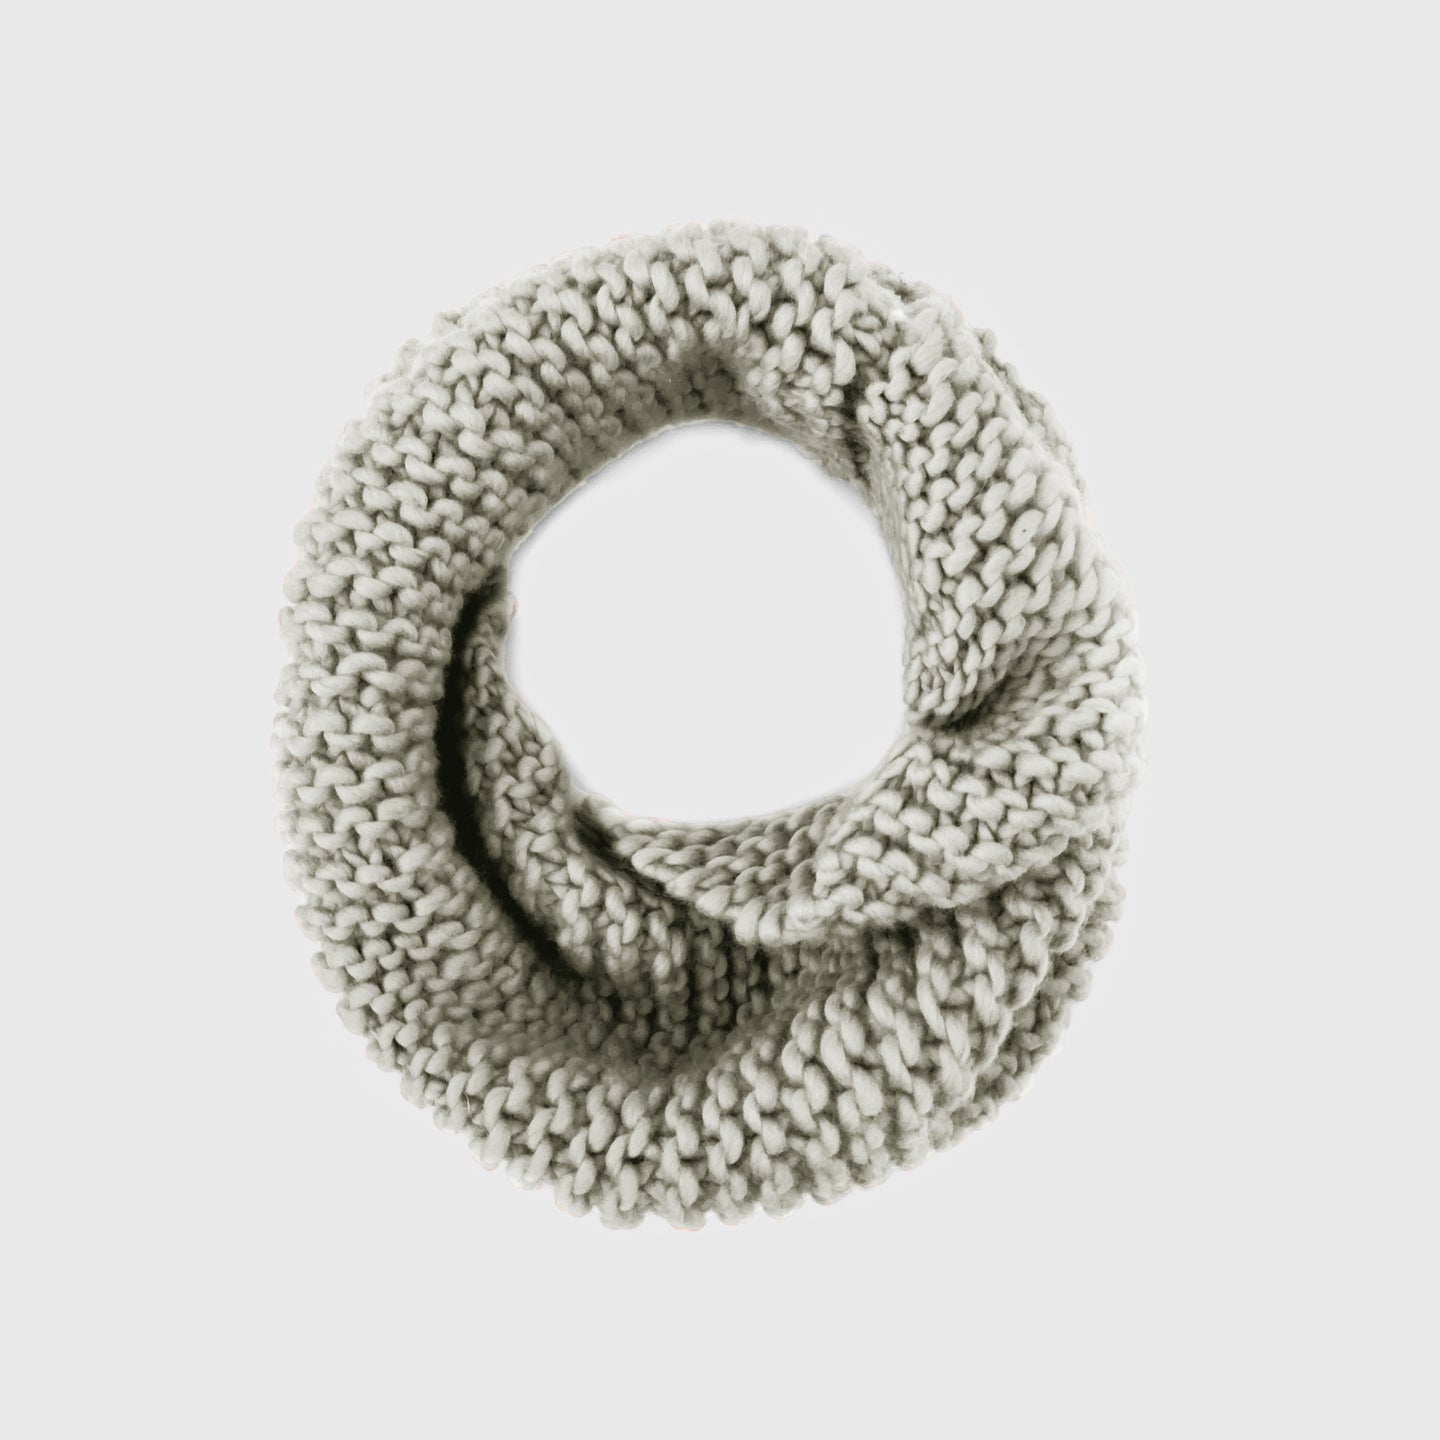  FECLOUD Crochet Knitting Kit for Beginners - 3Pcs